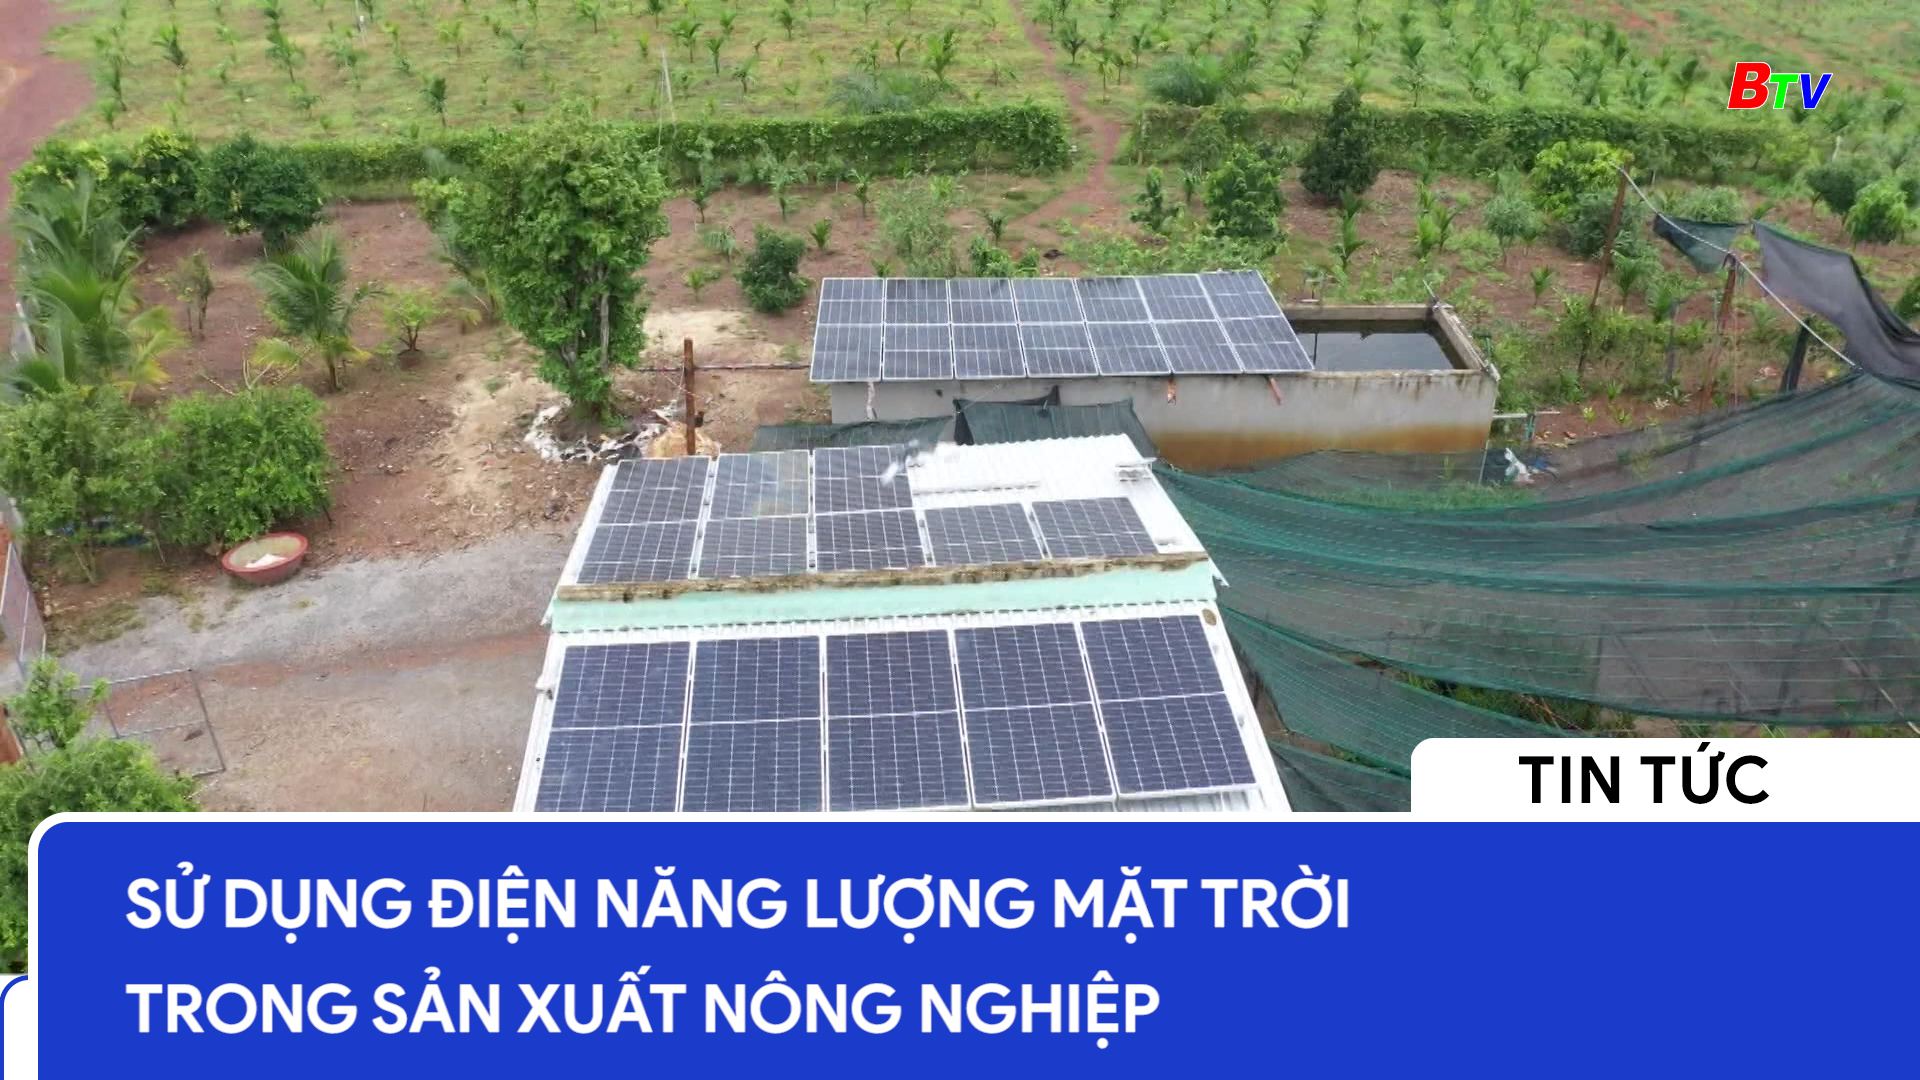 Sử dụng điện năng lượng mặt trời trong sản xuất nông nghiệp